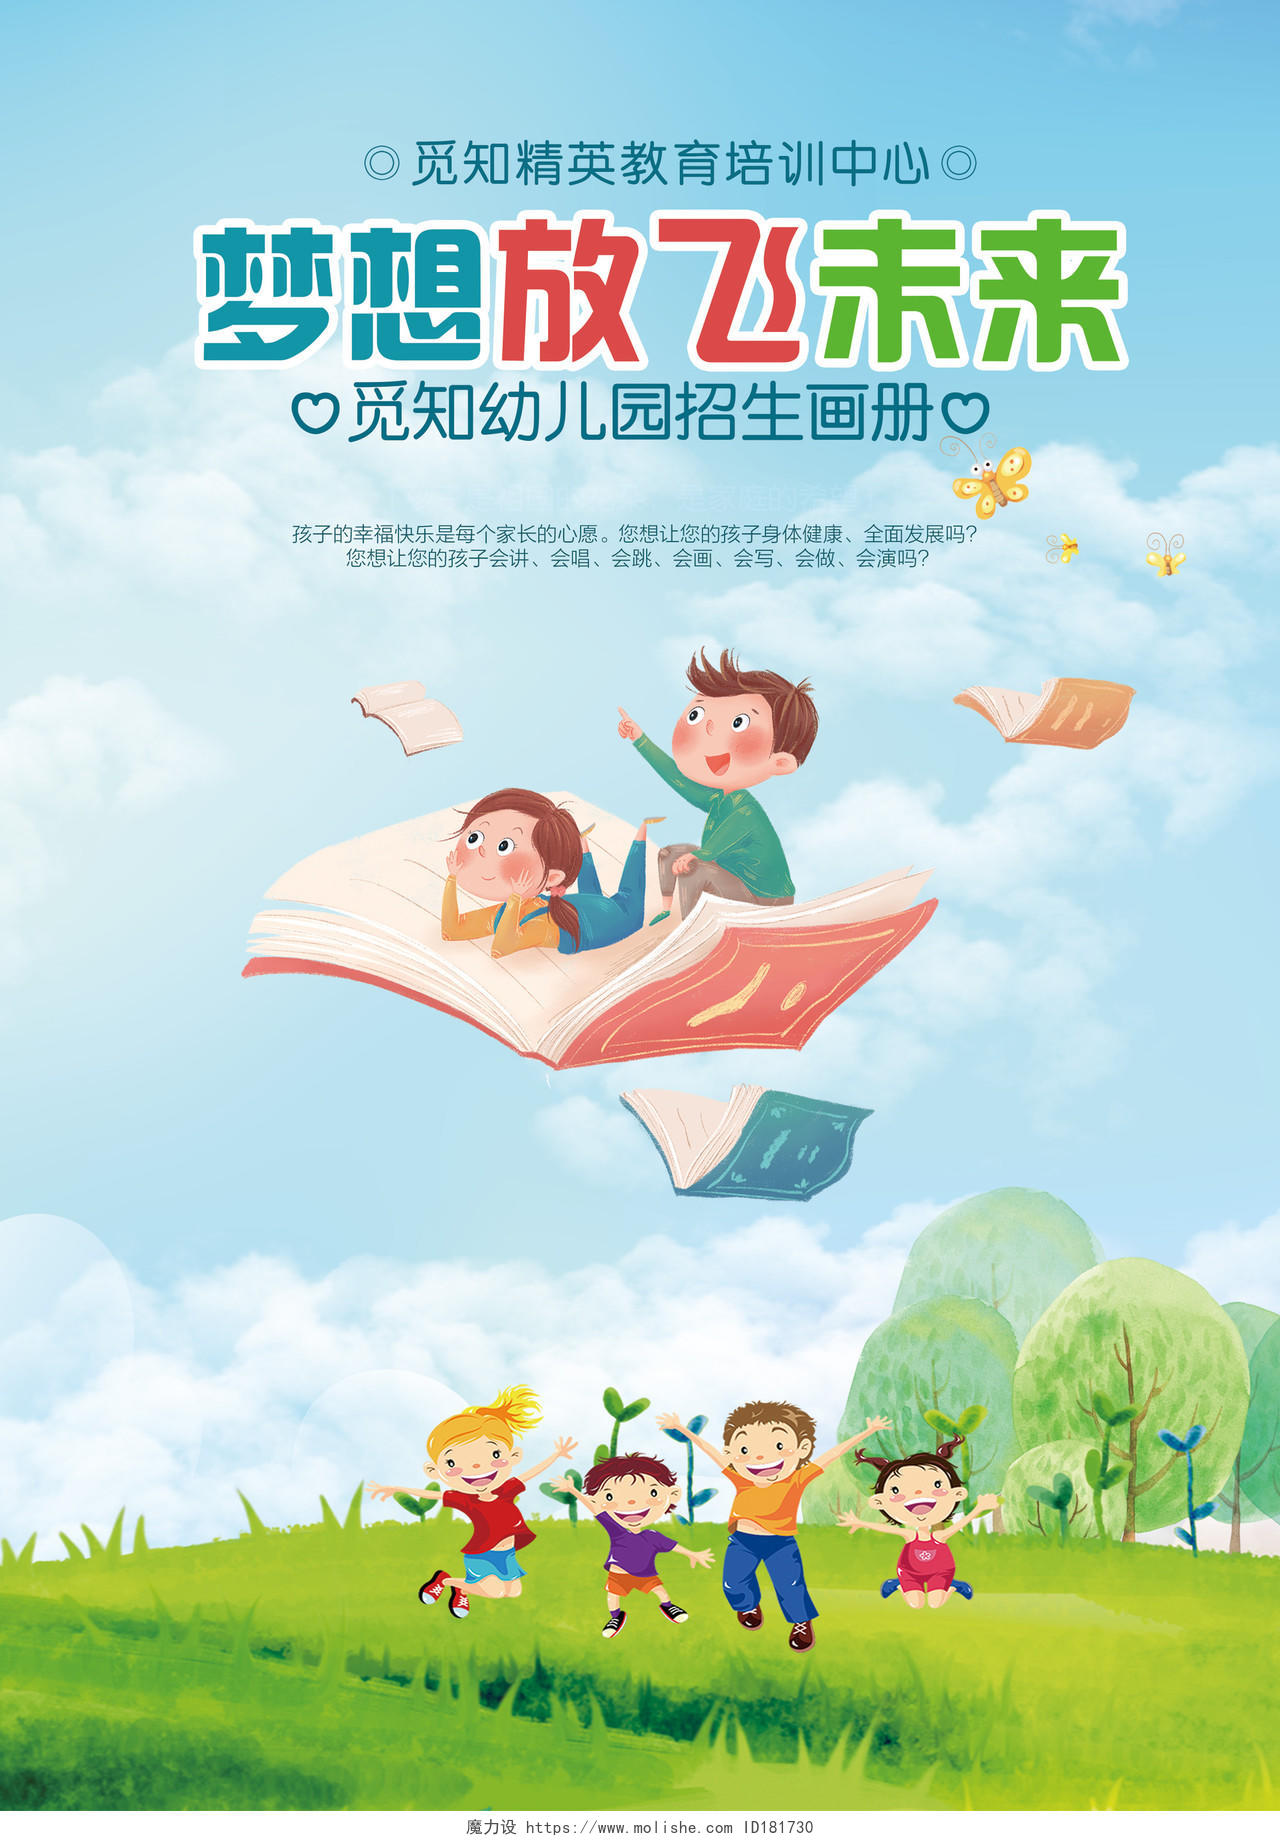 学校宣传单卡通幼儿园画册封面梦想放飞未来画册封面